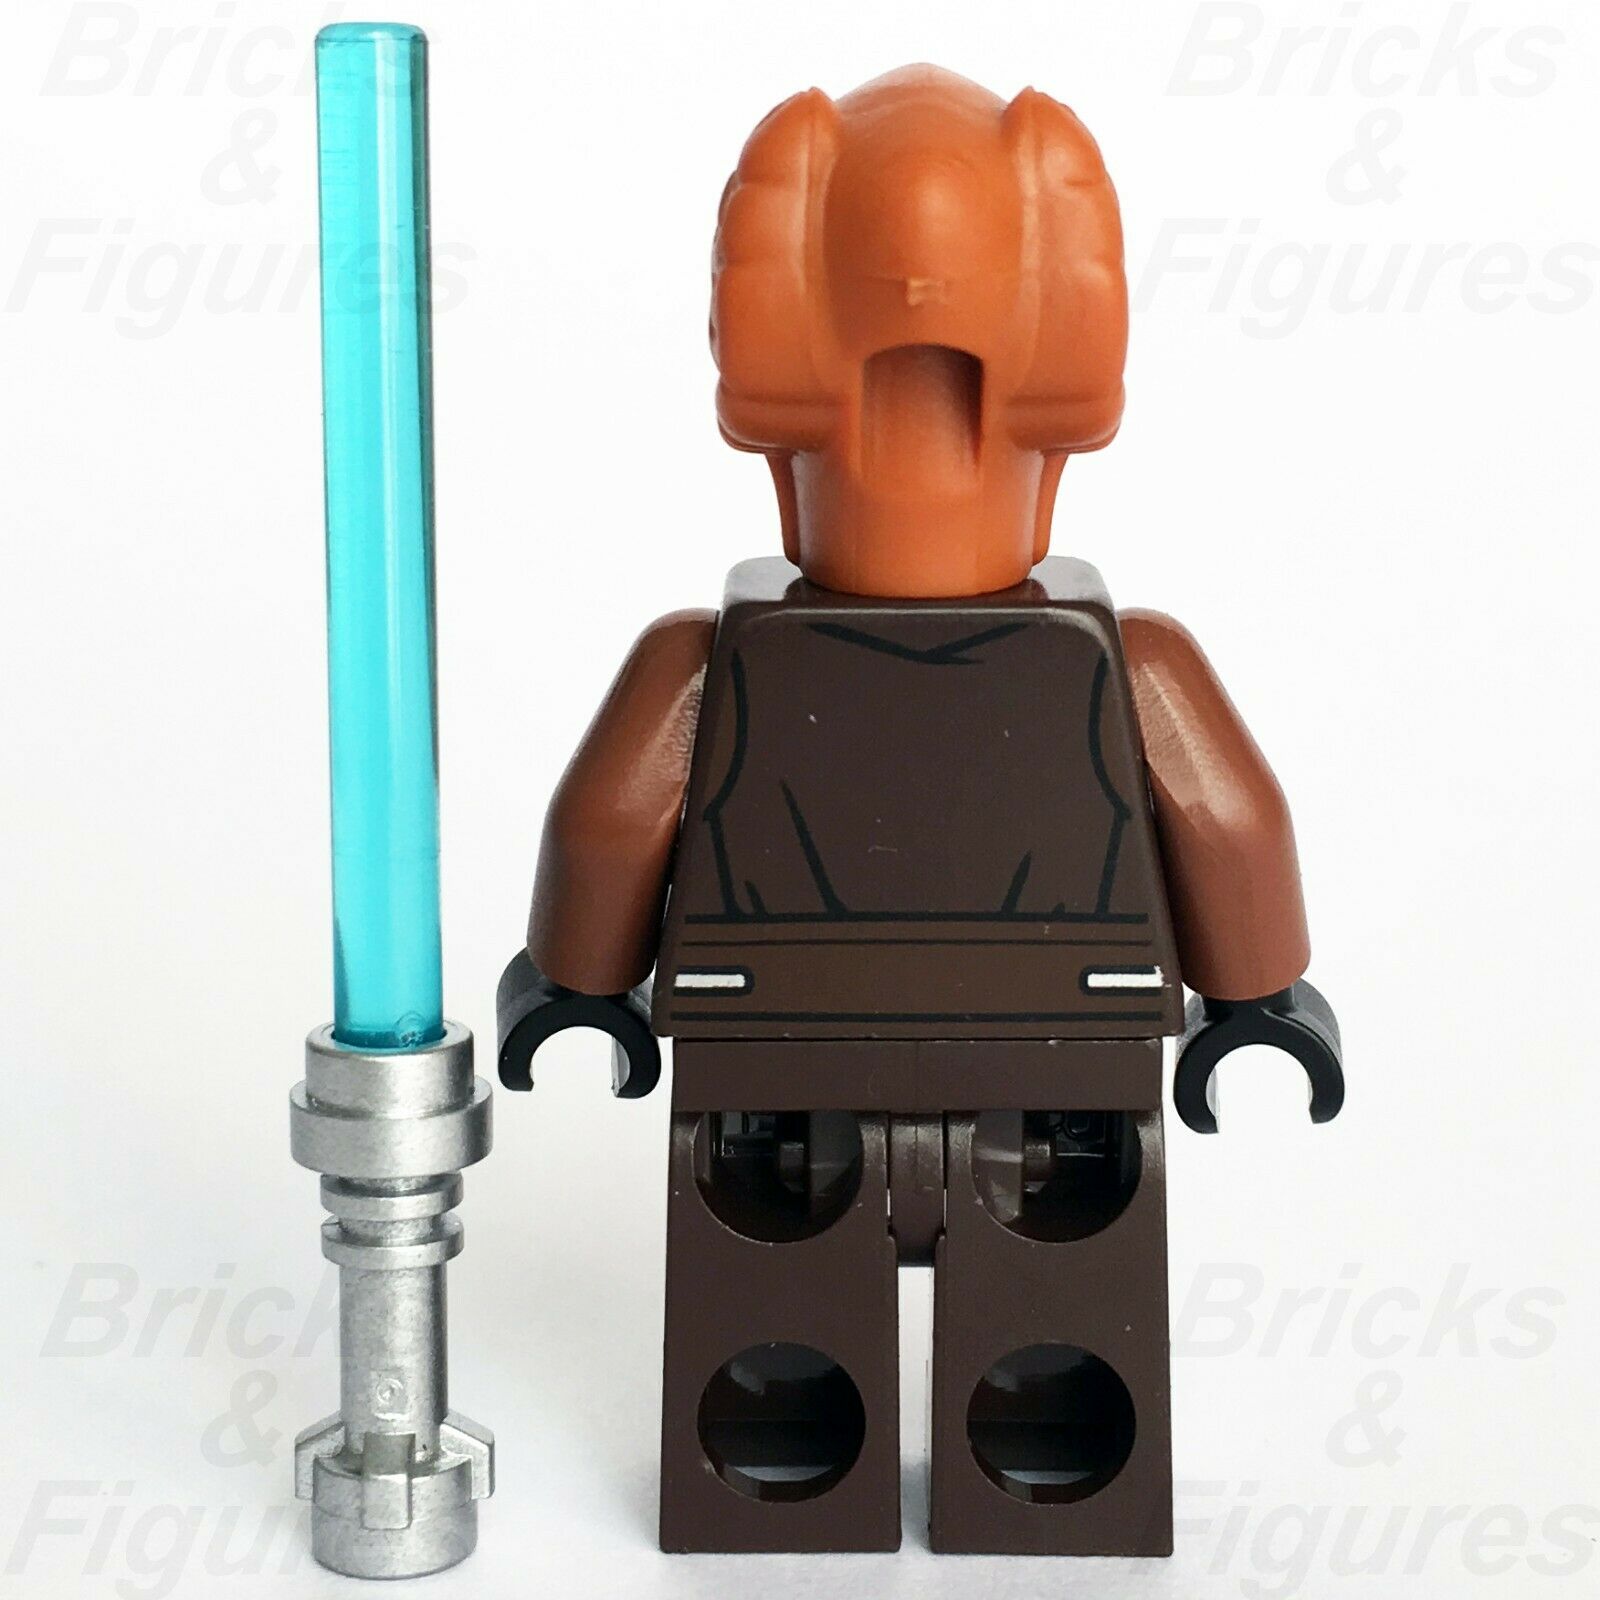 New Star Wars LEGO Plo Koon Jedi Master The Clone Wars General Minifigure 75045 - Bricks & Figures